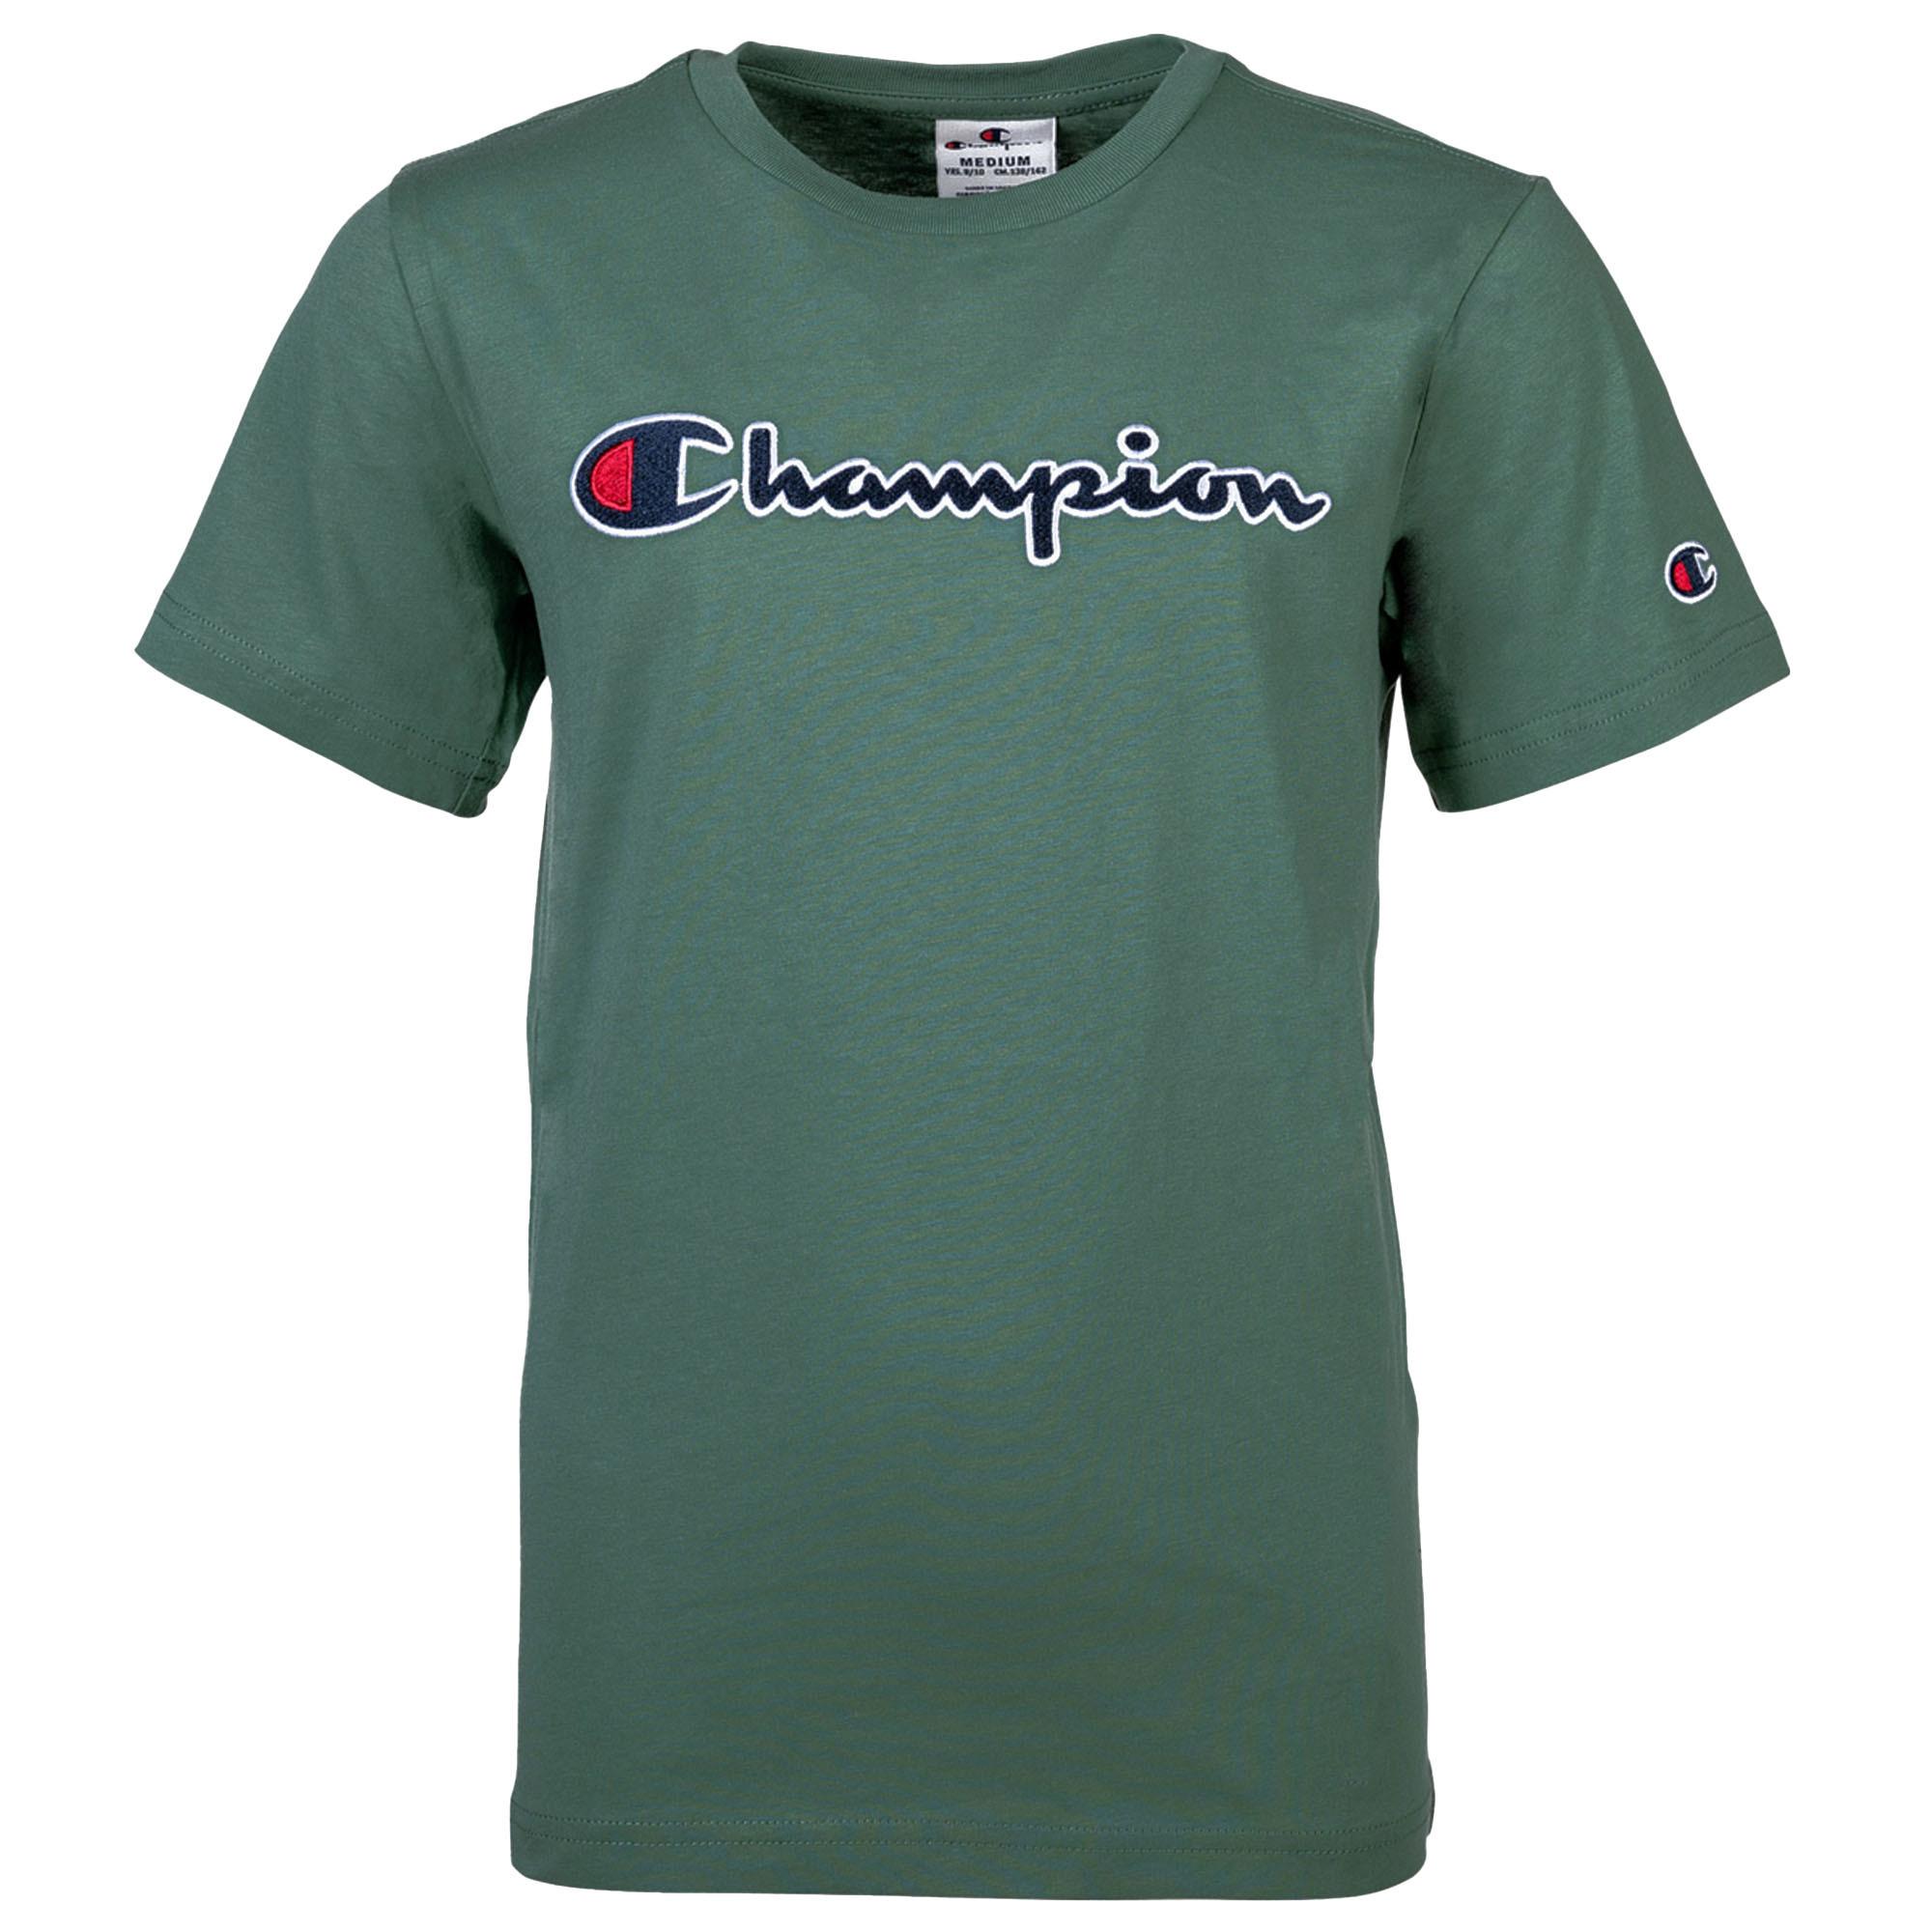 CHAMPION T-Shirt T-Shirt Online Grün kaufen SportScheck von Shop im